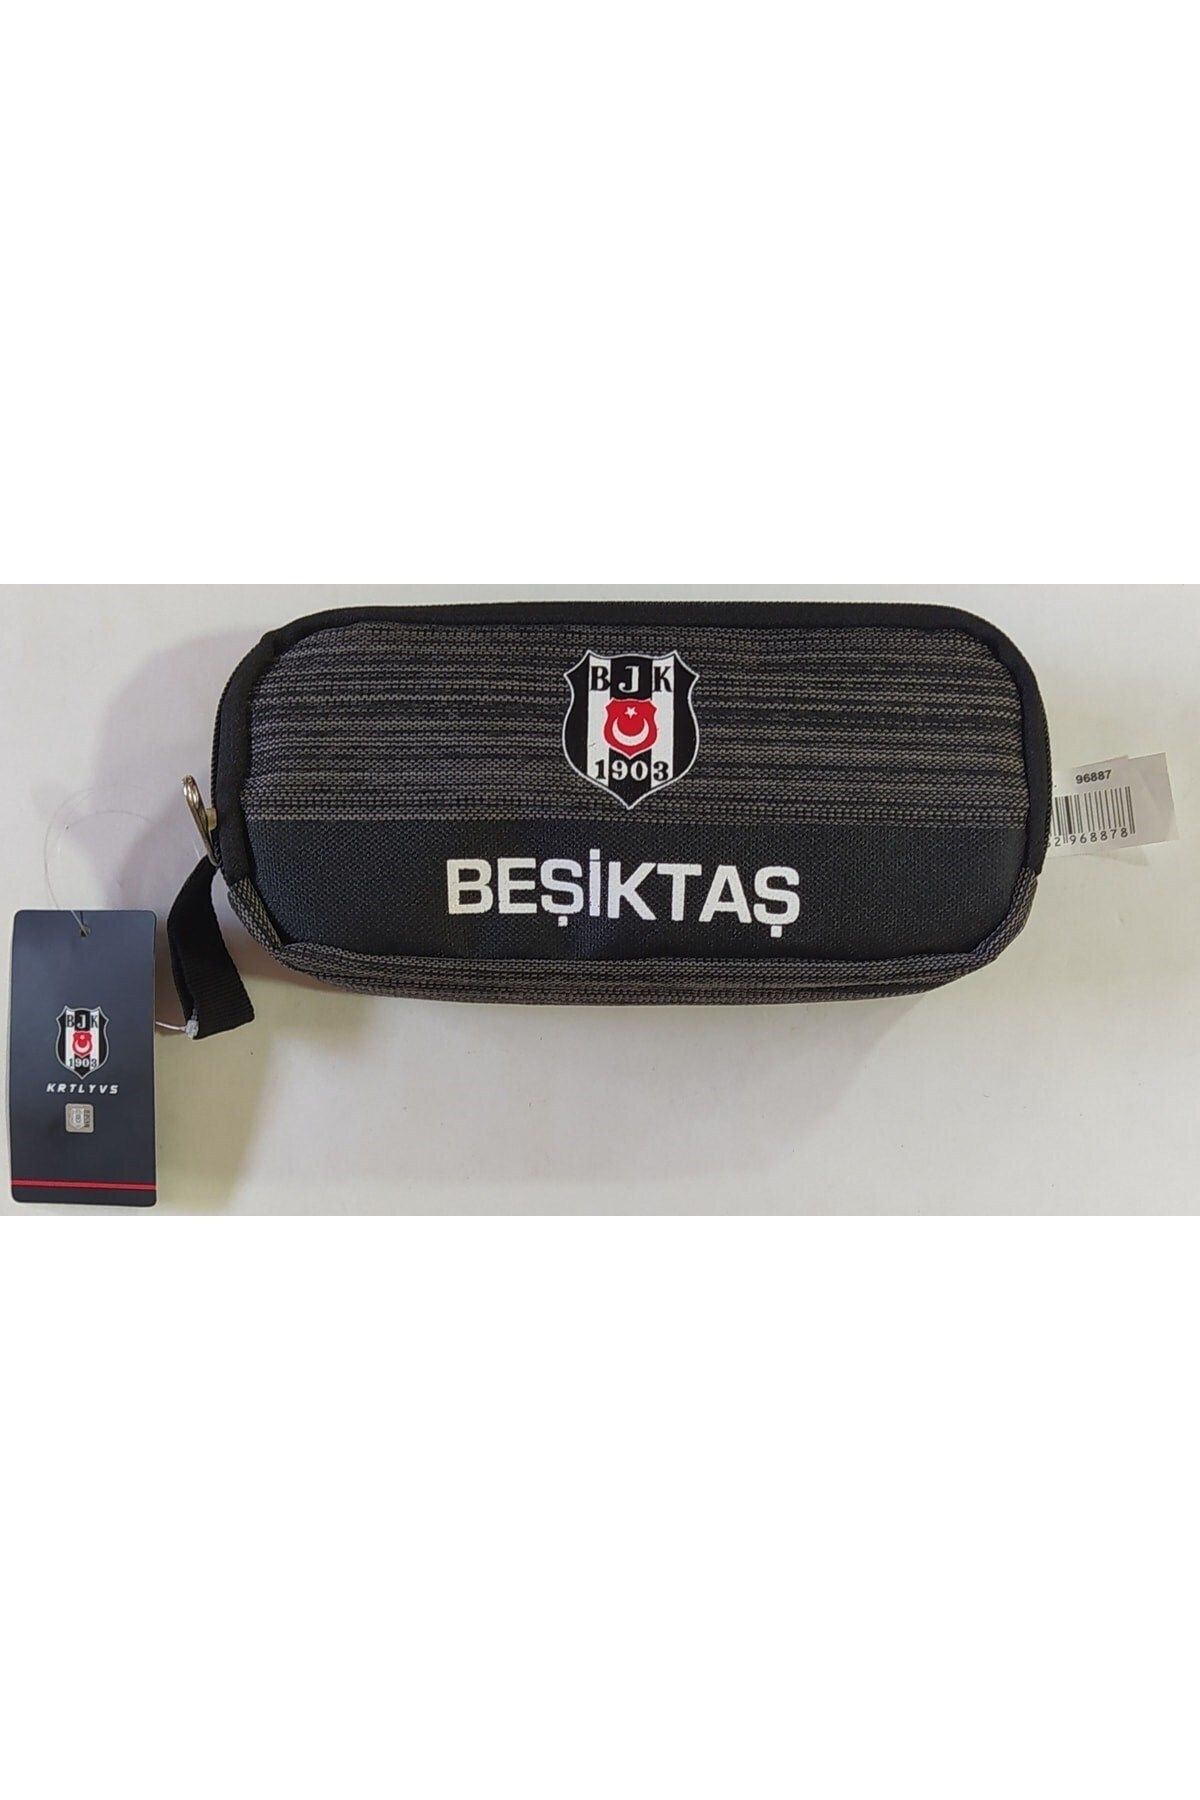 GENC DIJITAL BASKI Besiktas Kalem Çantası 96887